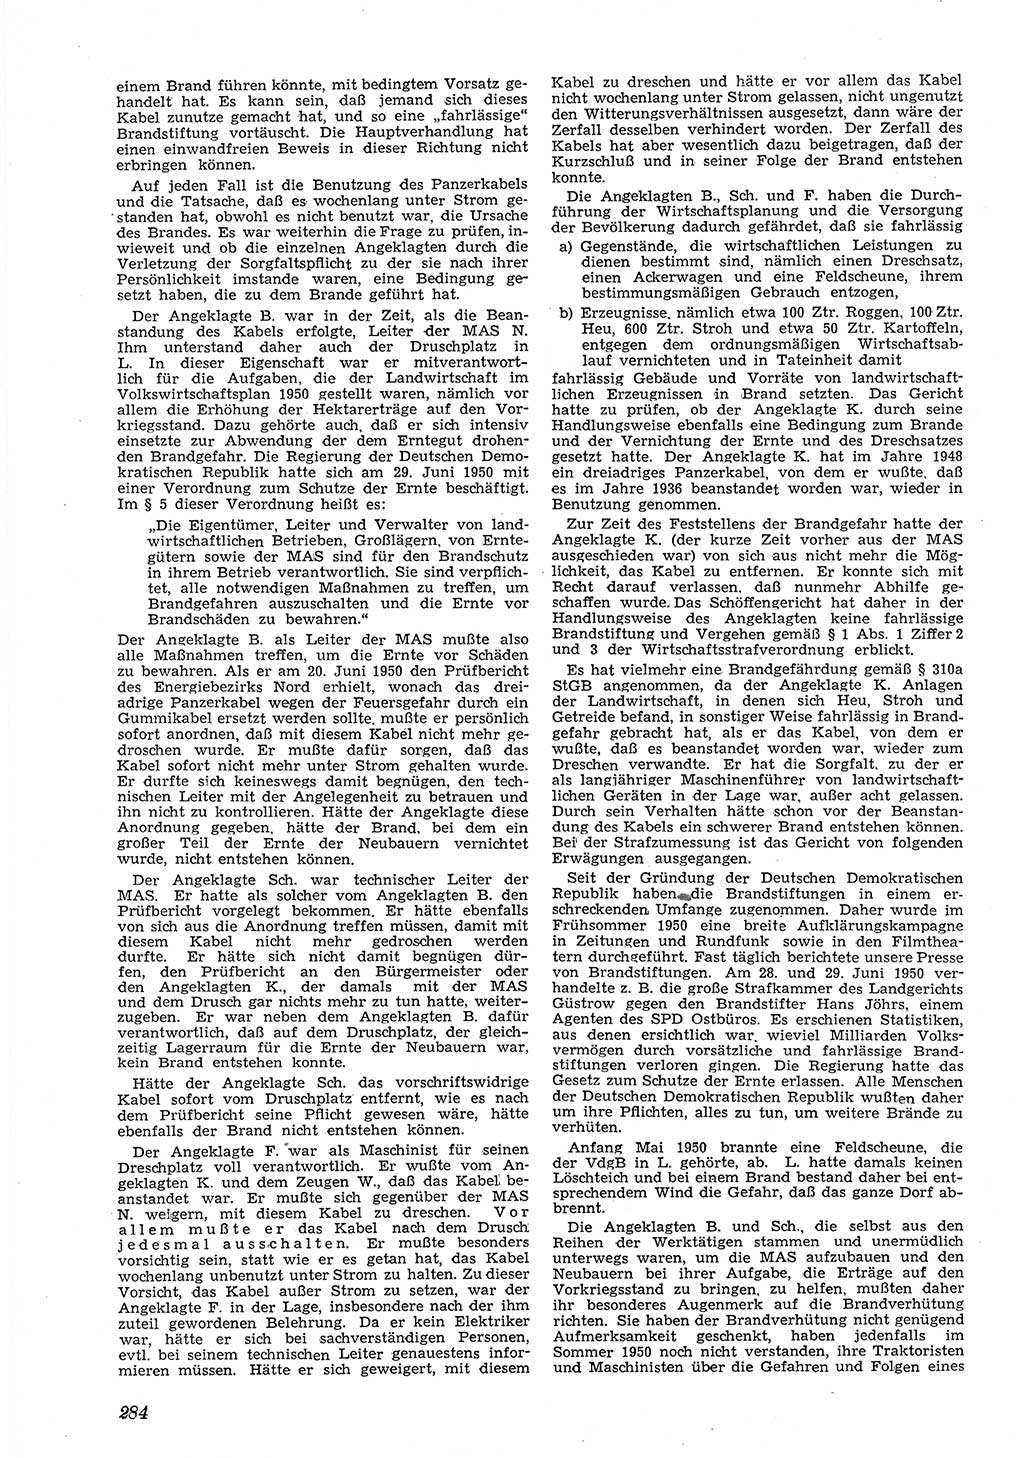 Neue Justiz (NJ), Zeitschrift für Recht und Rechtswissenschaft [Deutsche Demokratische Republik (DDR)], 5. Jahrgang 1951, Seite 284 (NJ DDR 1951, S. 284)